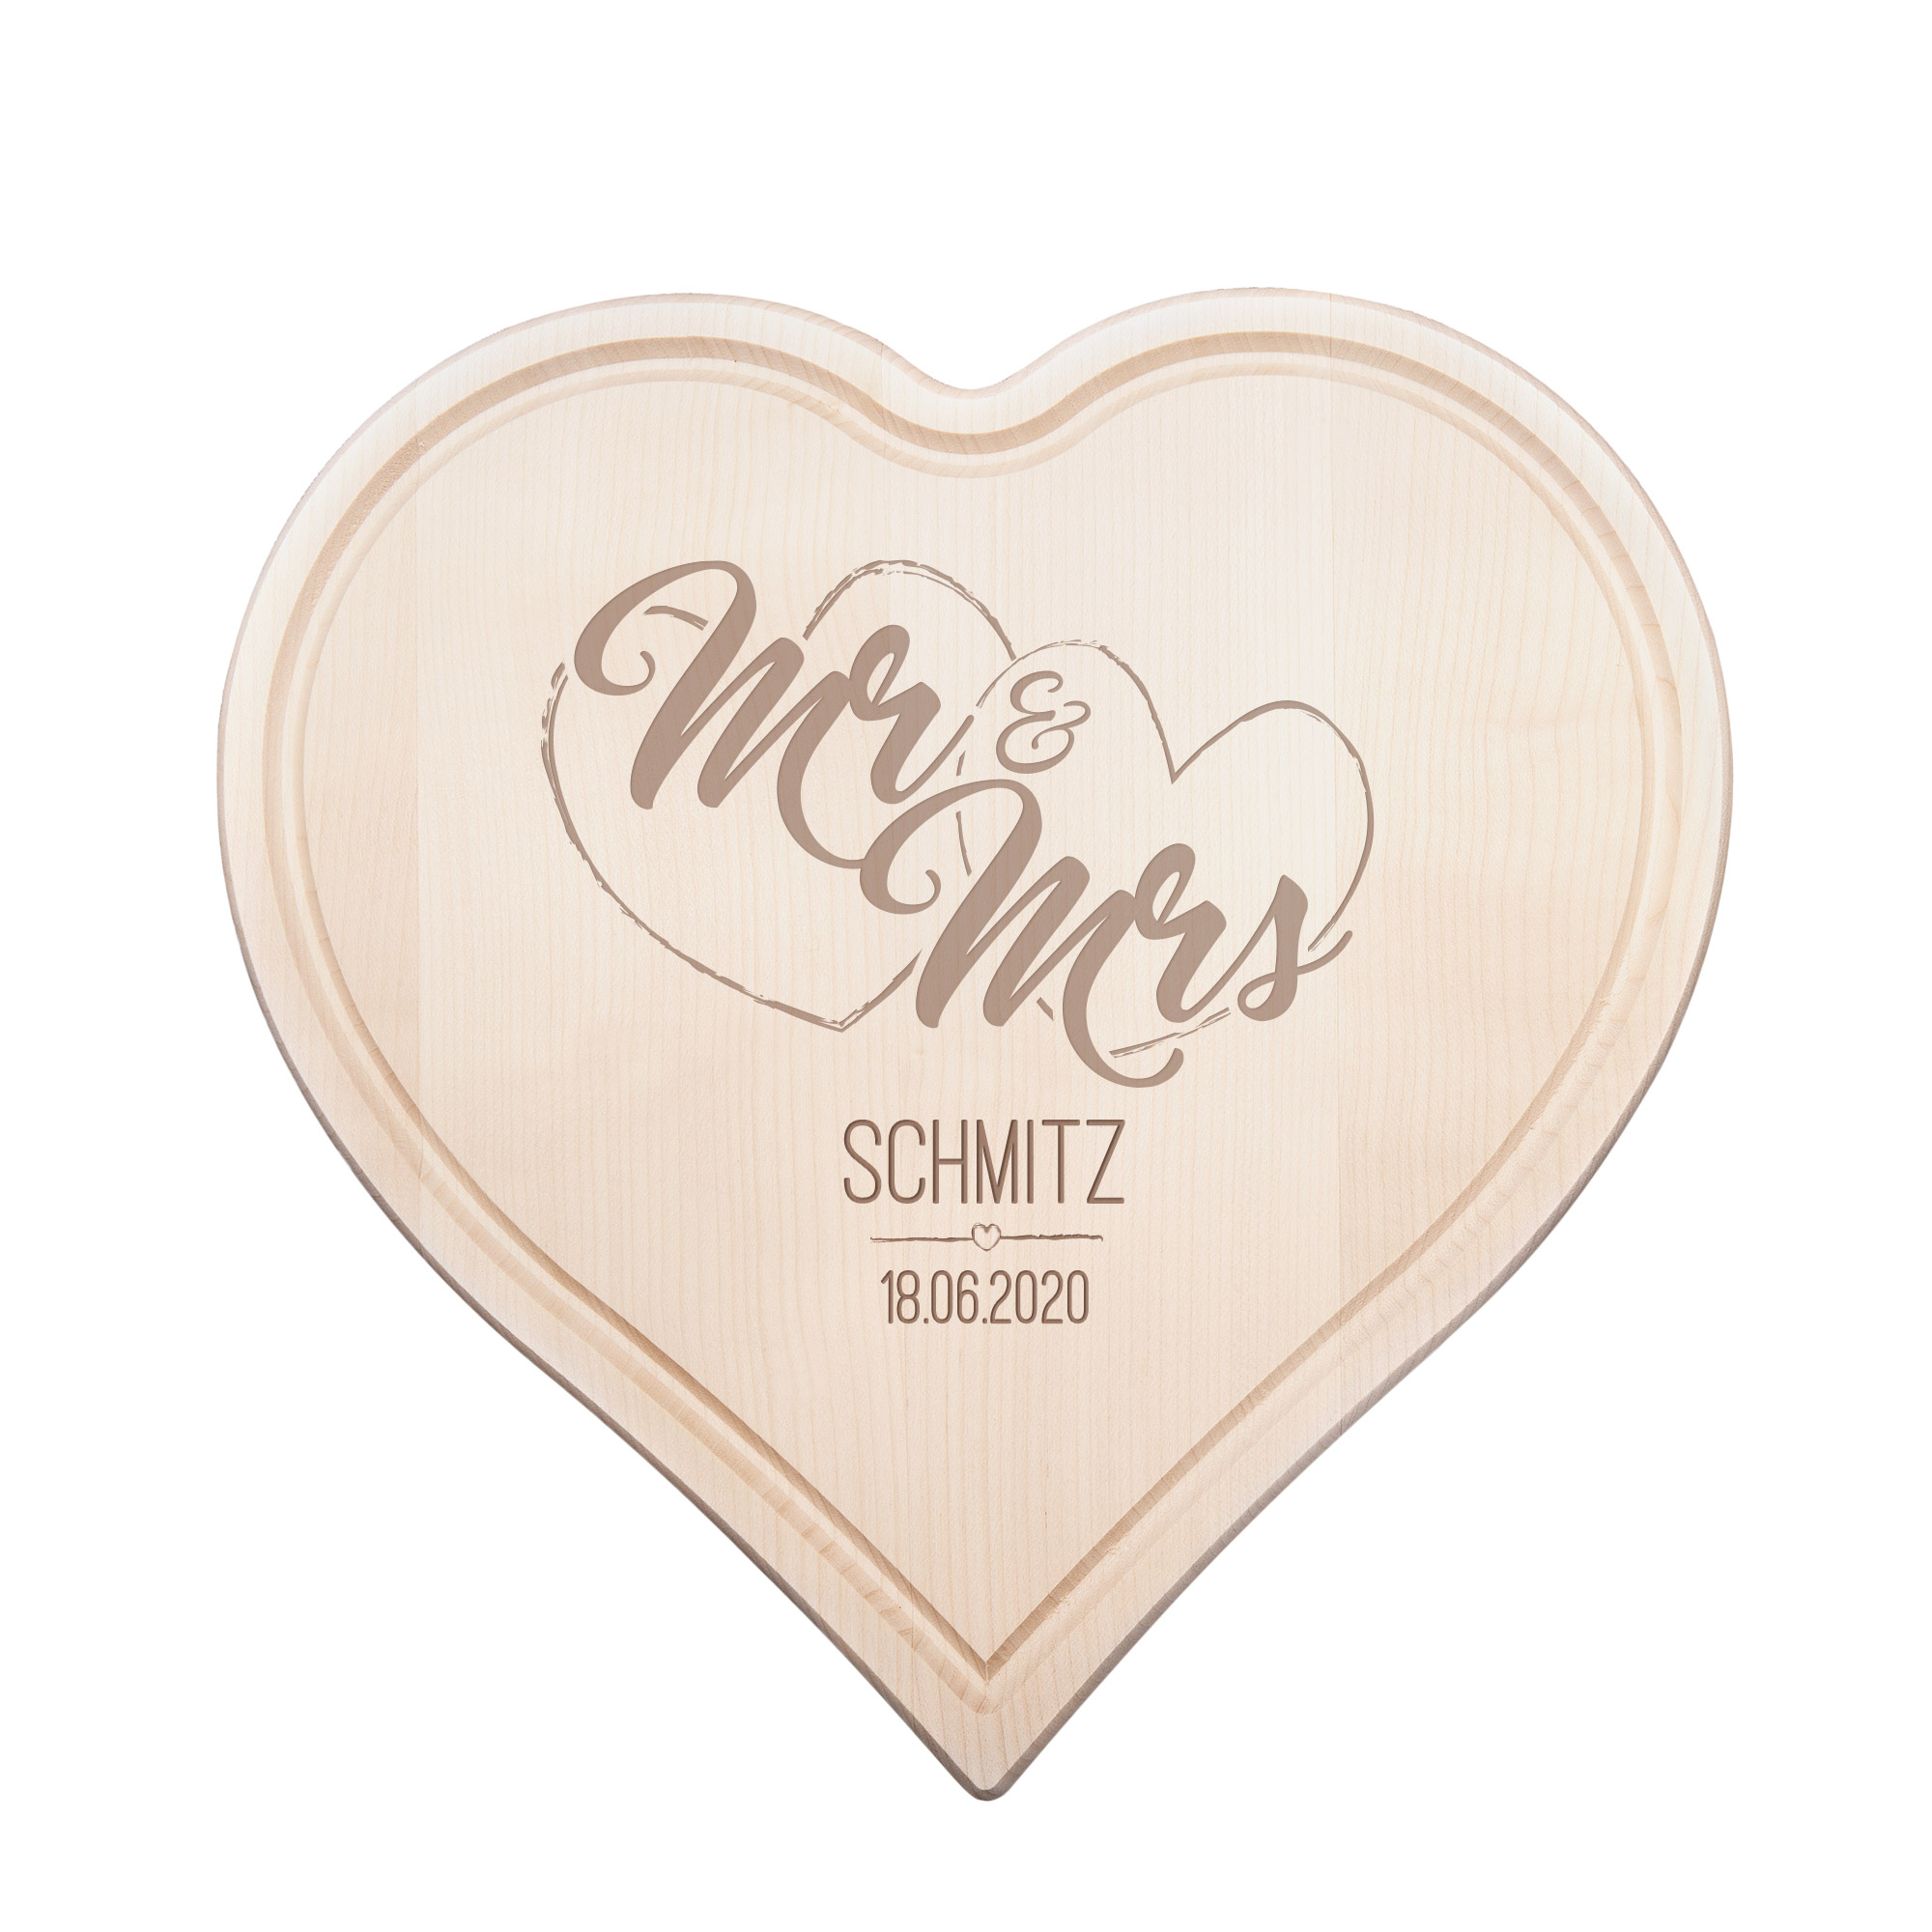 Schneidebrett in Herzform Mr & Mrs, Schneidebrett aus Holz, Hochzeitsgeschenk, Holzbrett mit Gravur